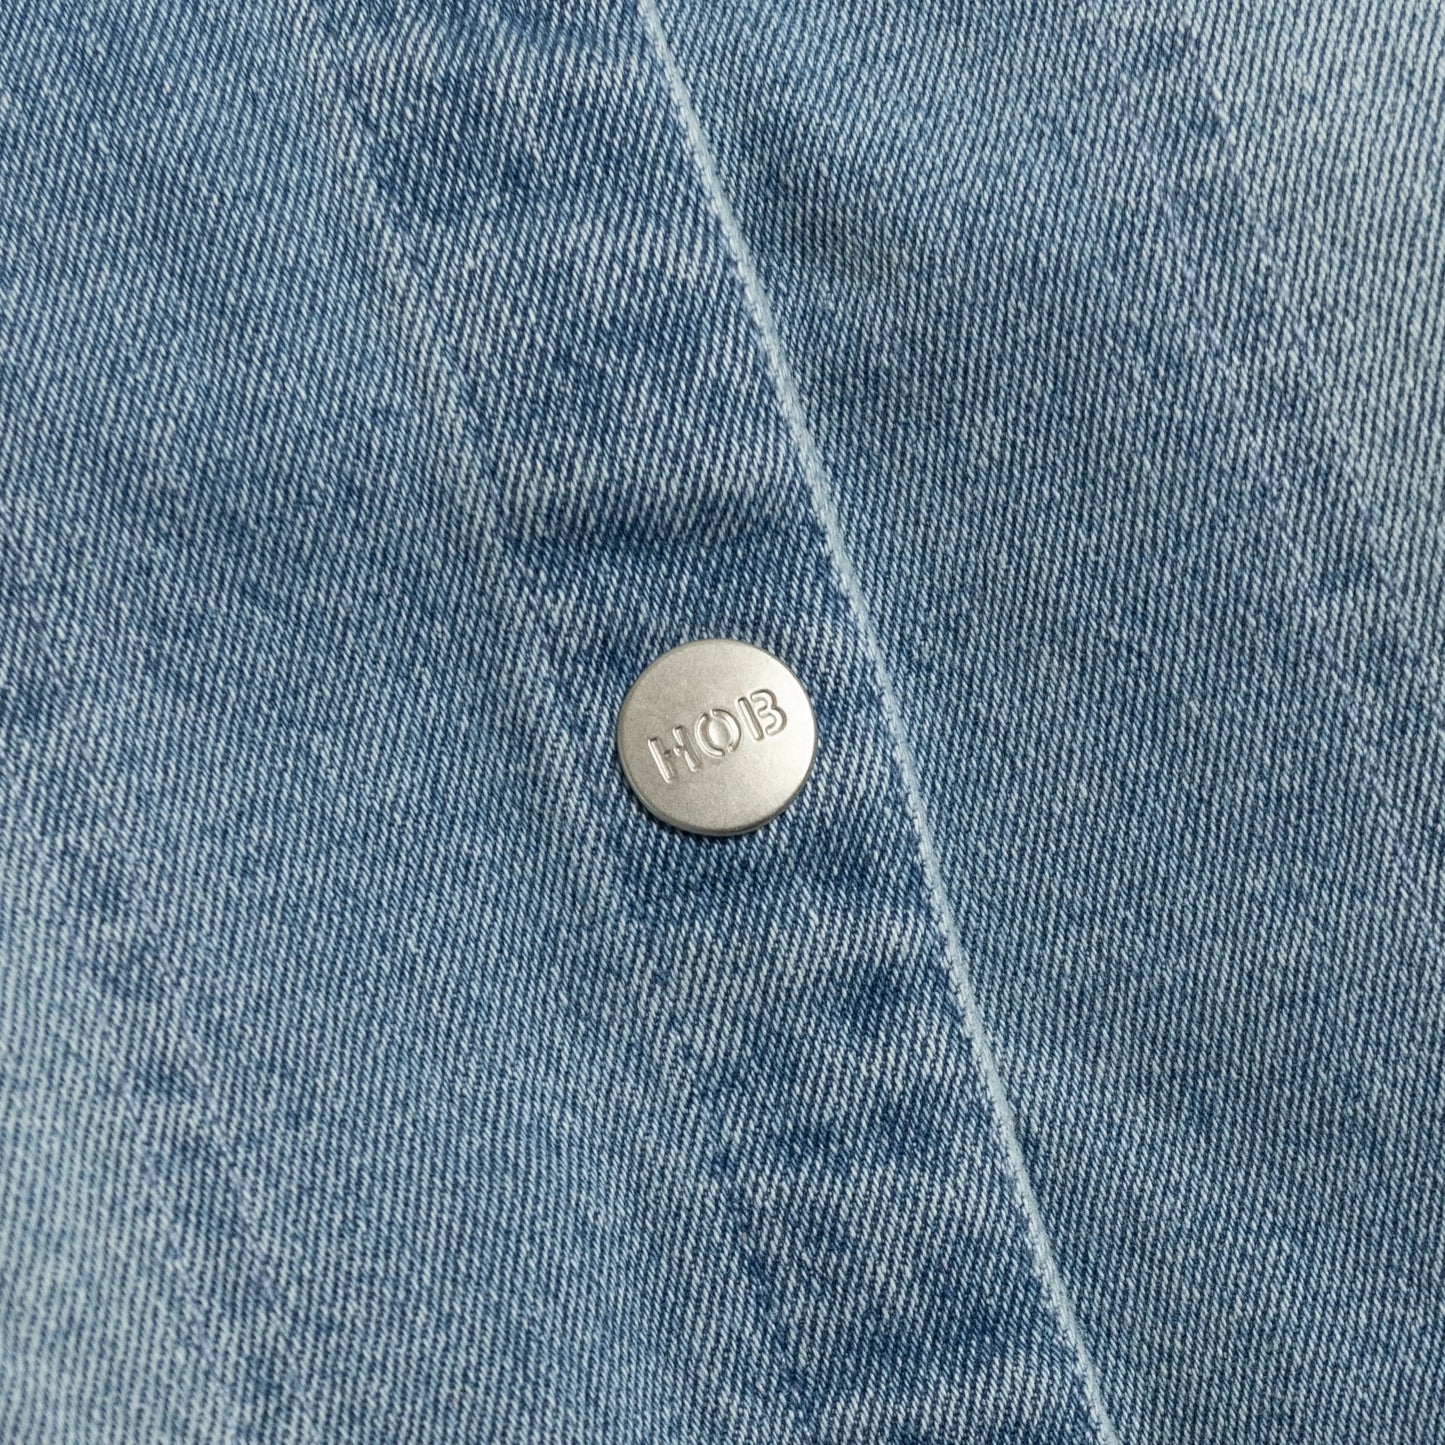 Kids Denim Jacket Button